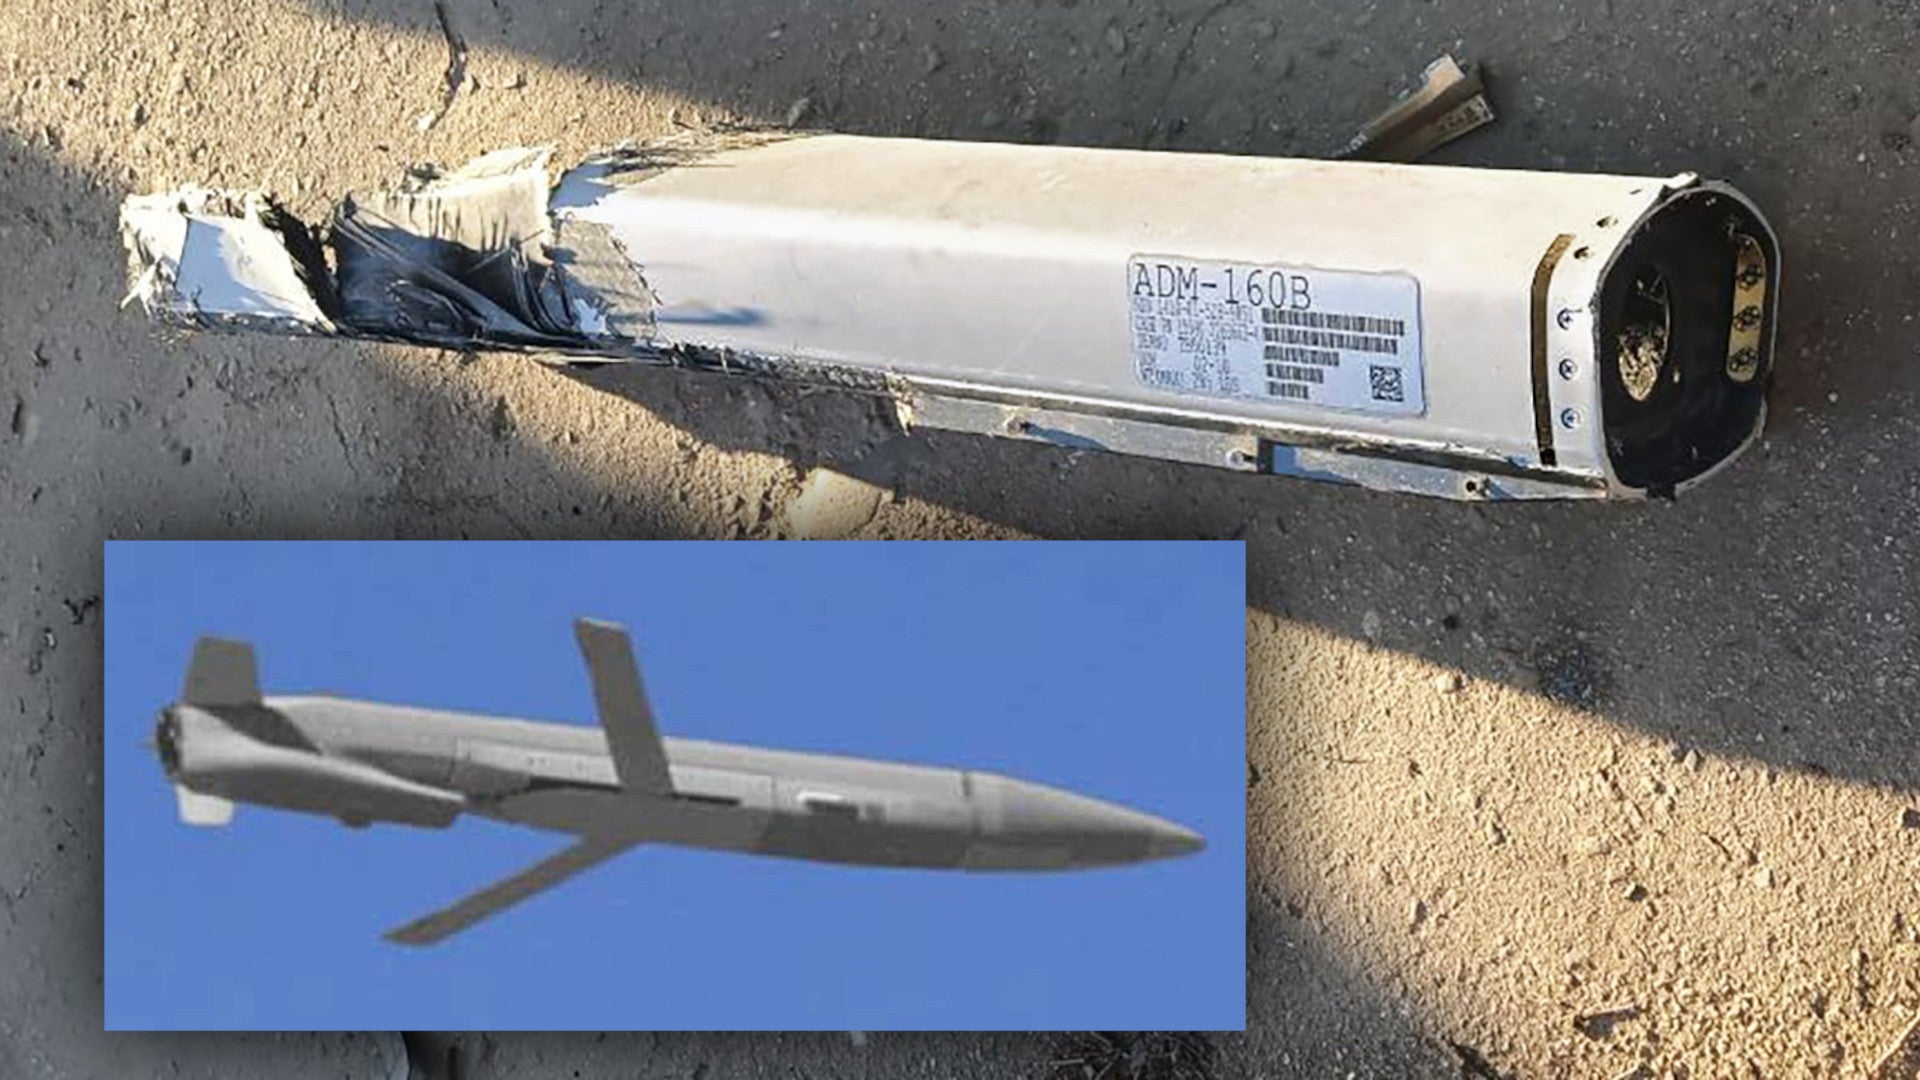 Bukti penggunaan umpan miniatur ADM-160 yang diluncurkan dari udara oleh Ukraina